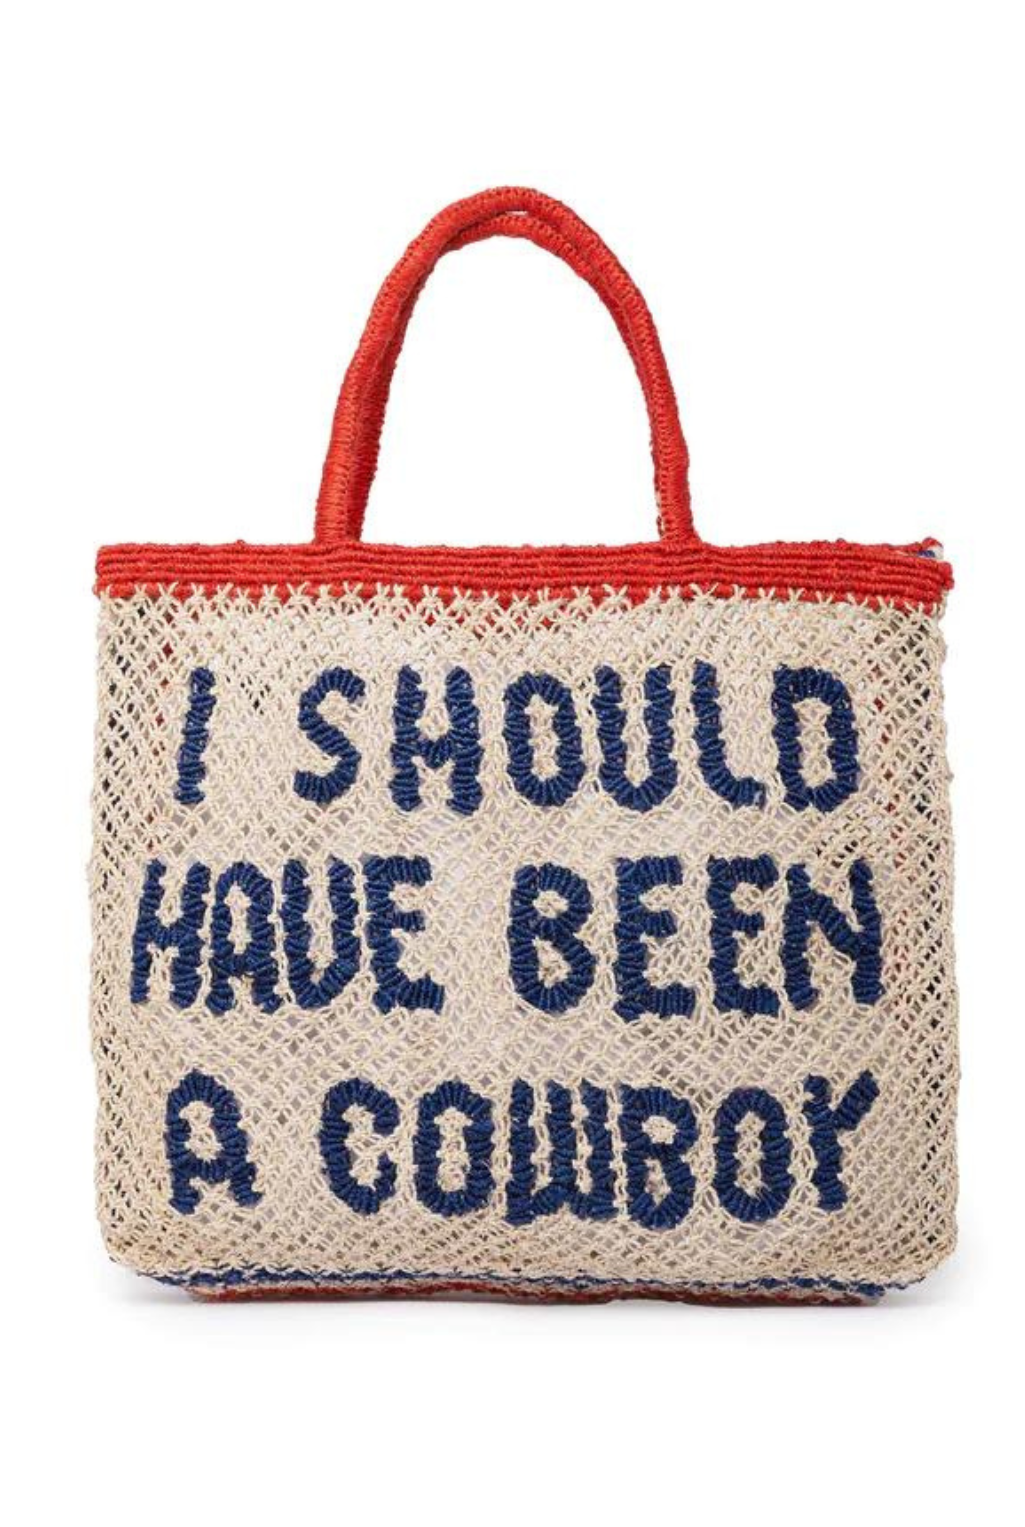 Been A Cowboy Jute Handbag - Blue/Red